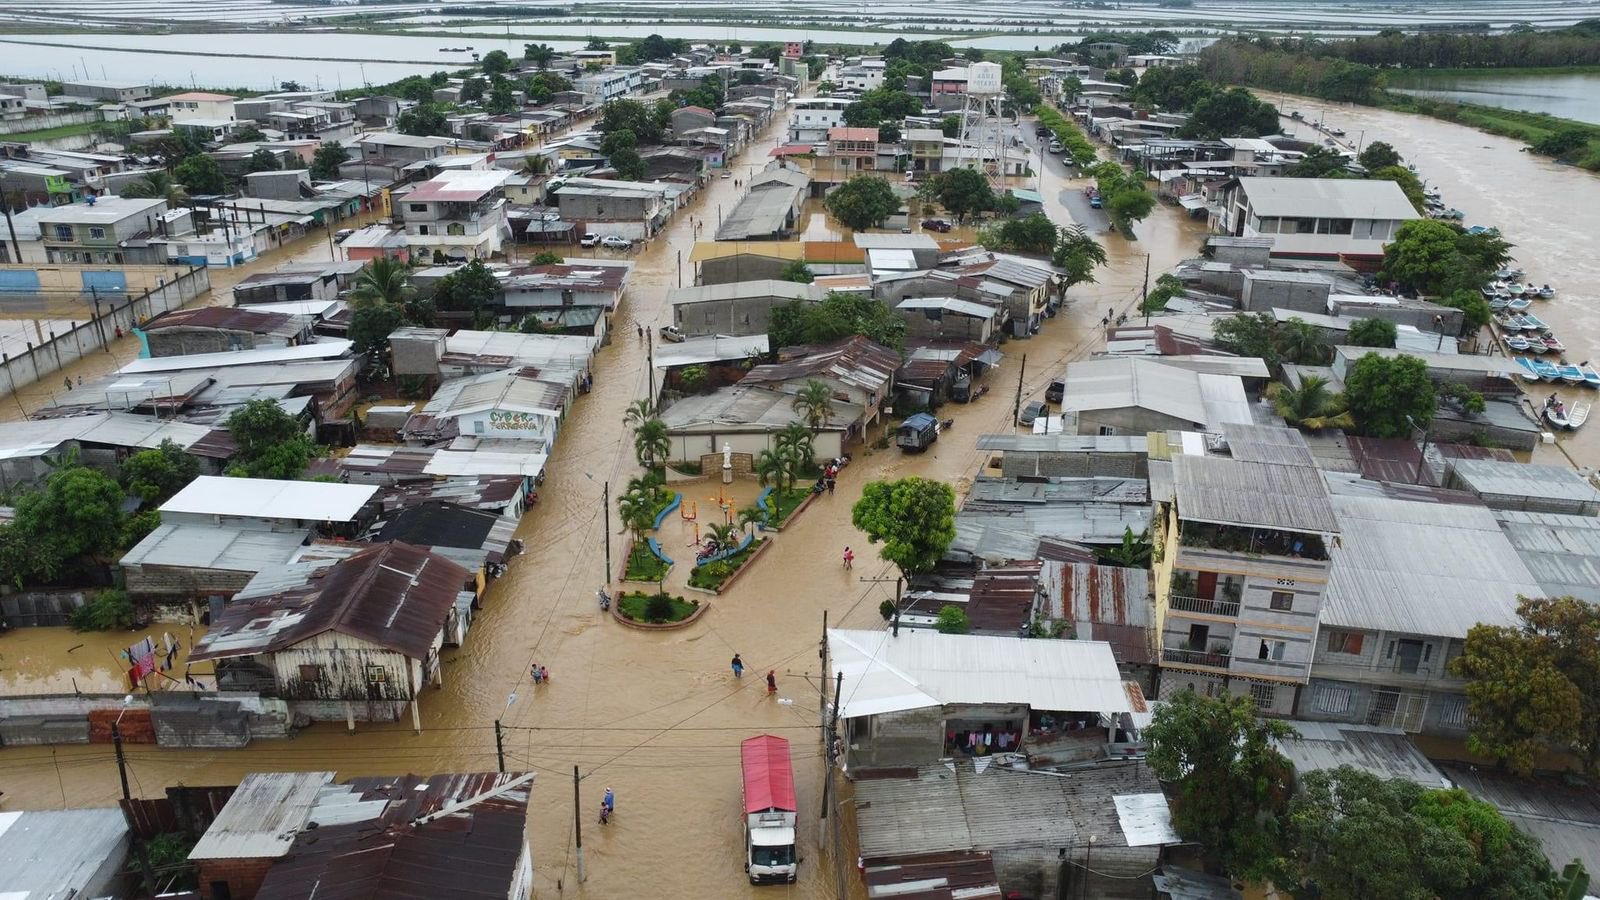 El sector Balao Grande, a la altura del estadio del cantón Balao, fue afectado por fuertes inundaciones entre la madrugada y la mañana de este viernes 28 de enero del 2022. Foto: Cortesía @LaEngracia